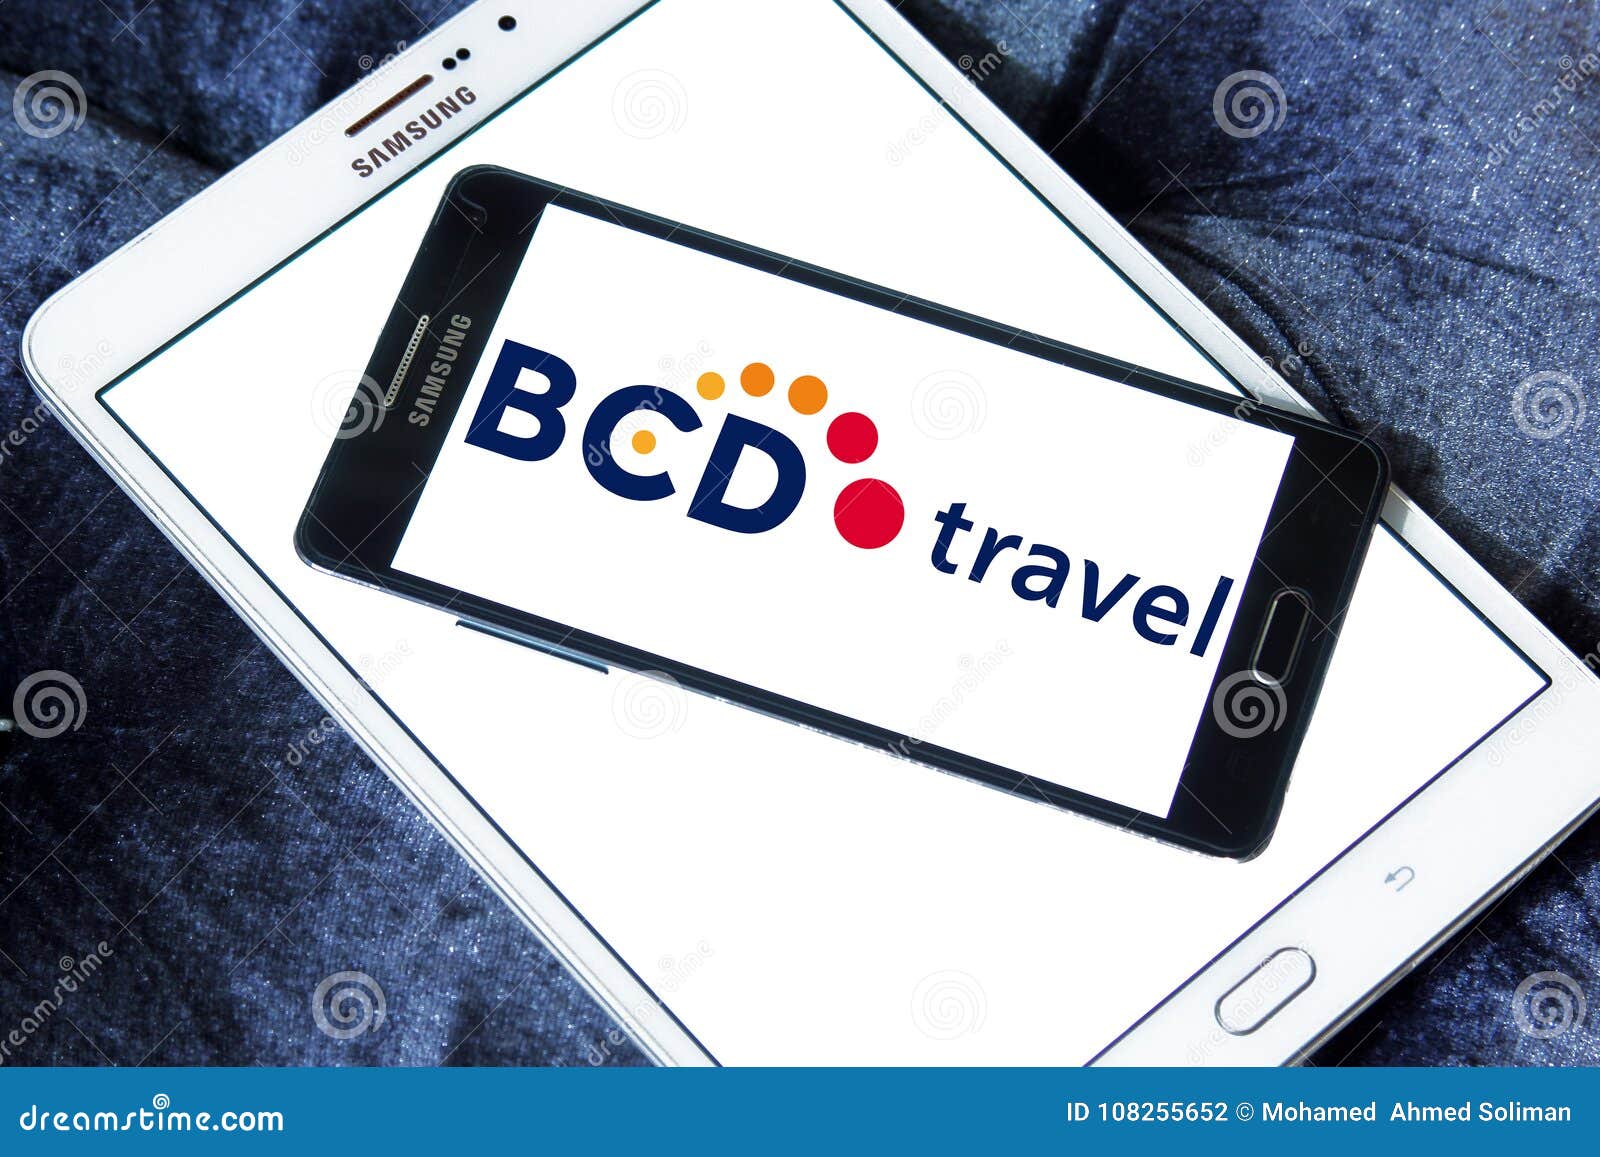 bcd travel company